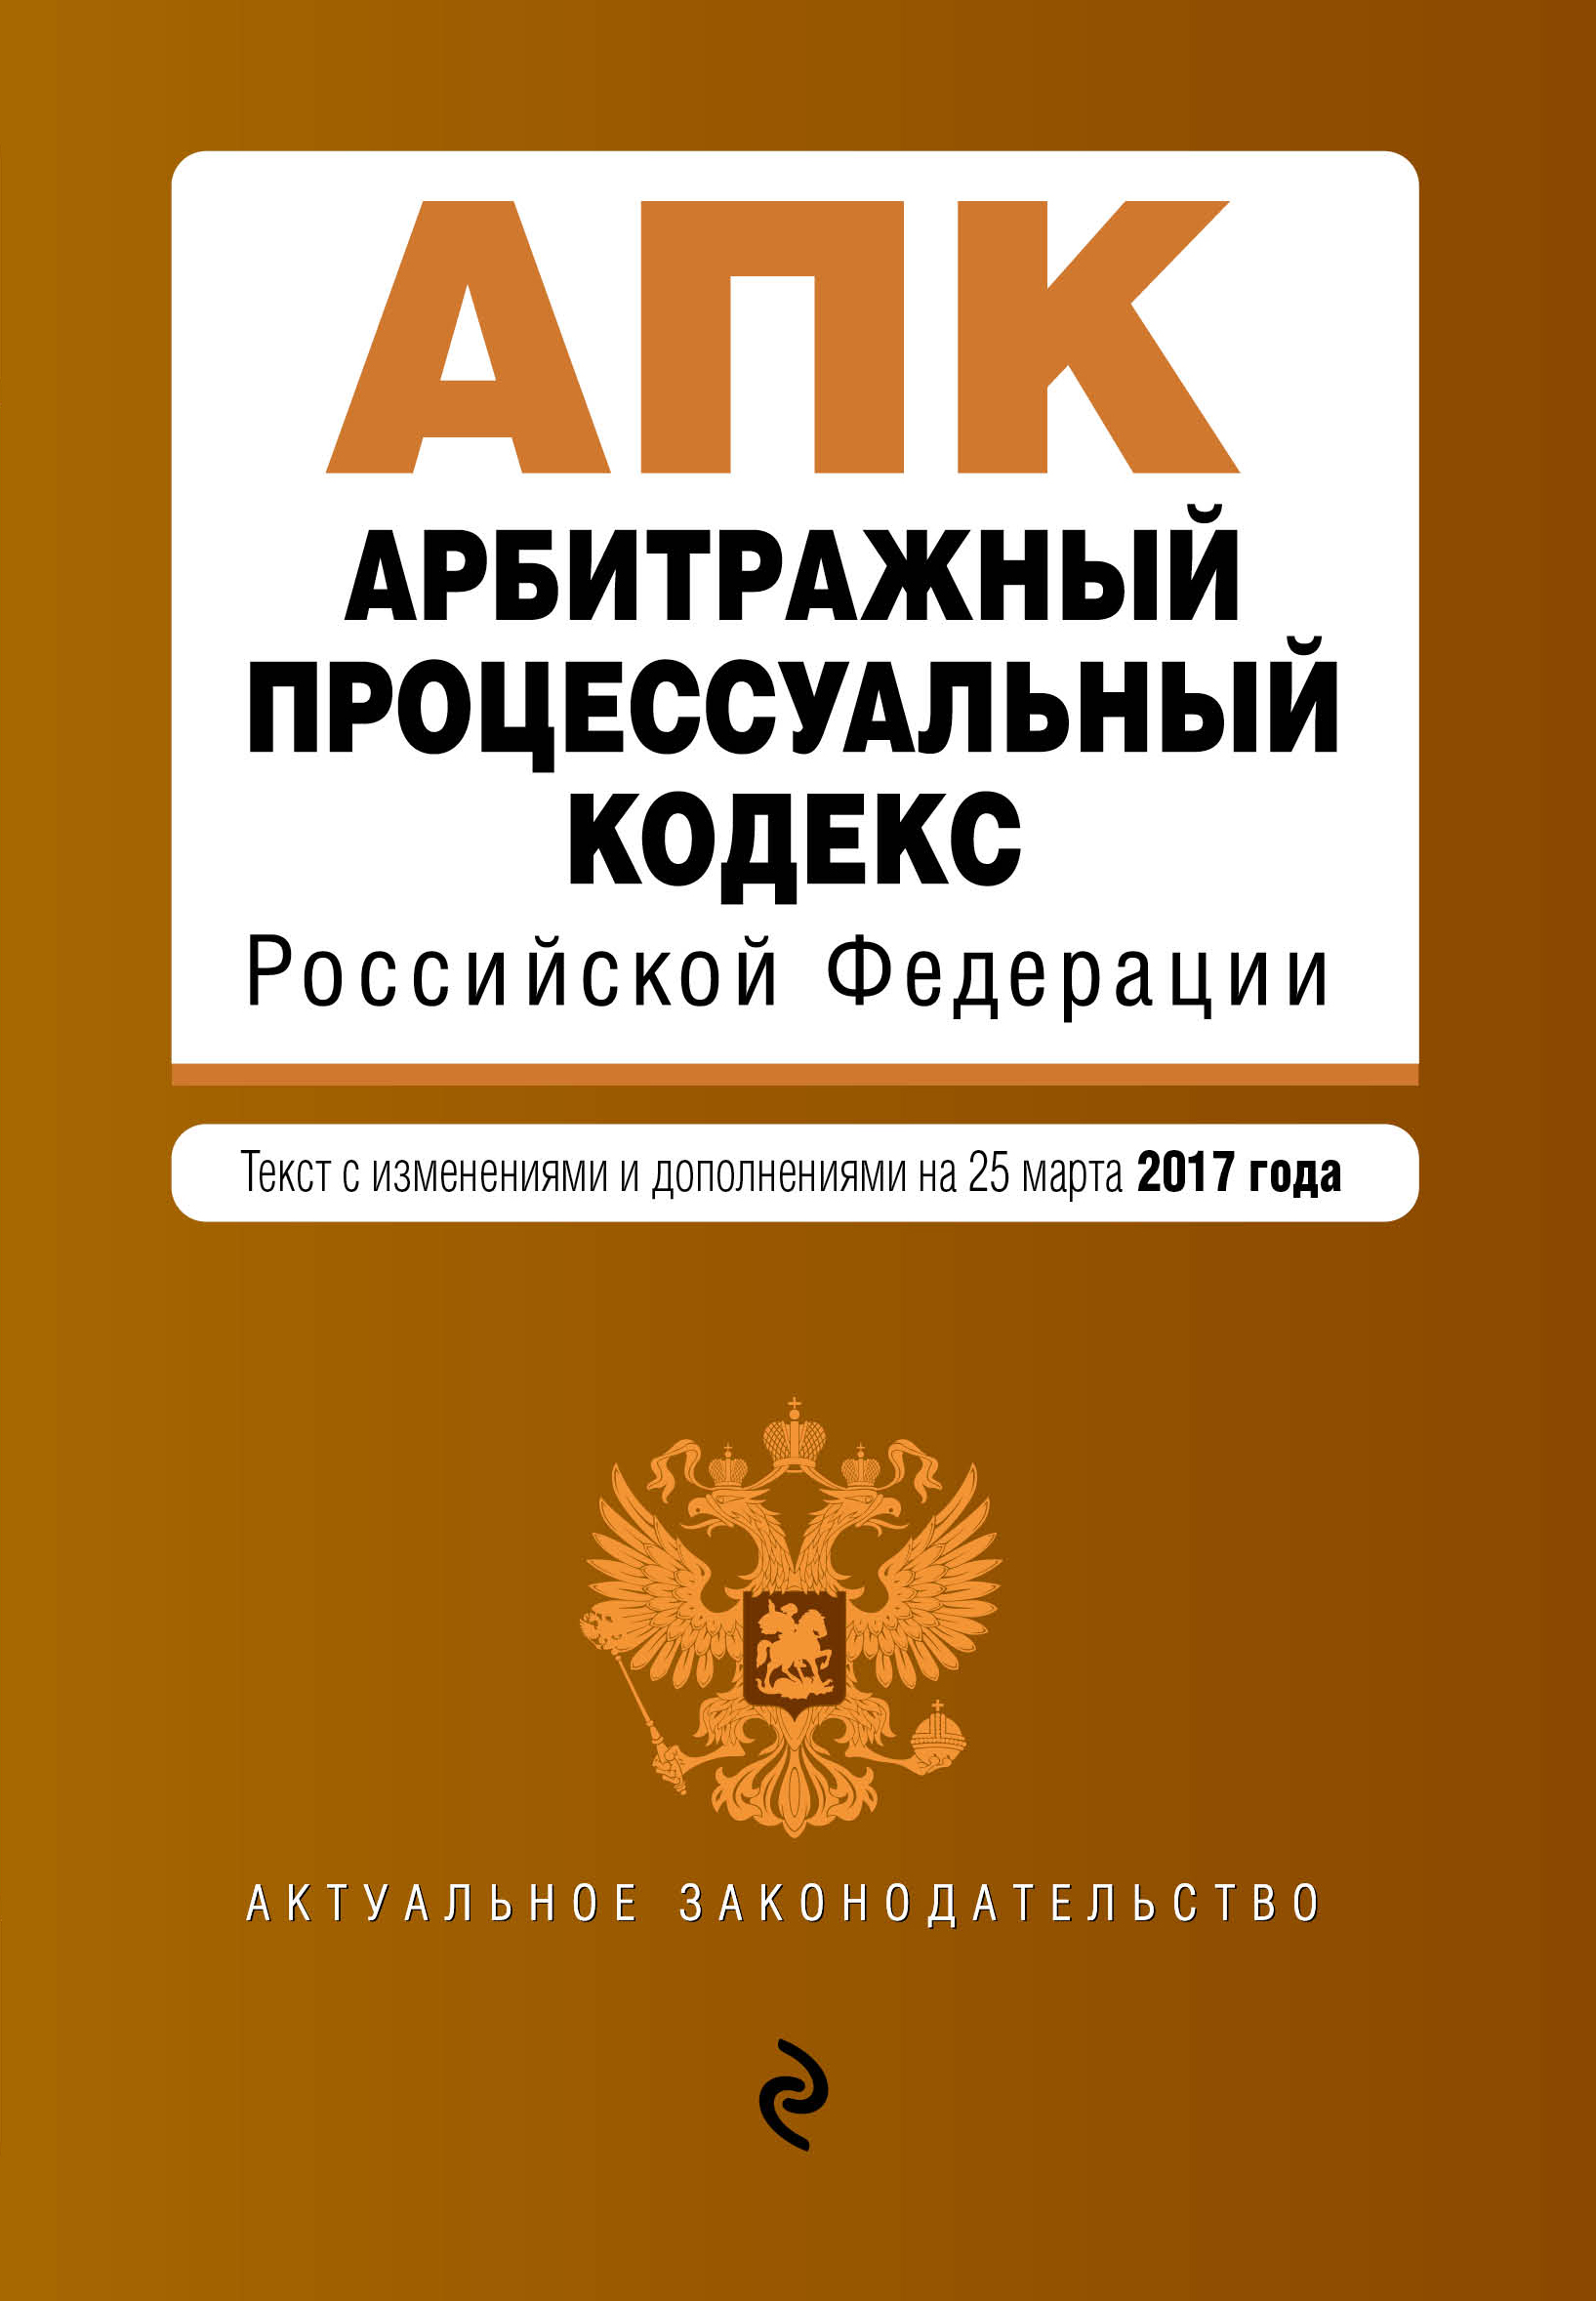 Арбитражный процессуальный кодекс Российской Федерации. Текст с изменениями и дополнениями на 25 марта 2017 г.